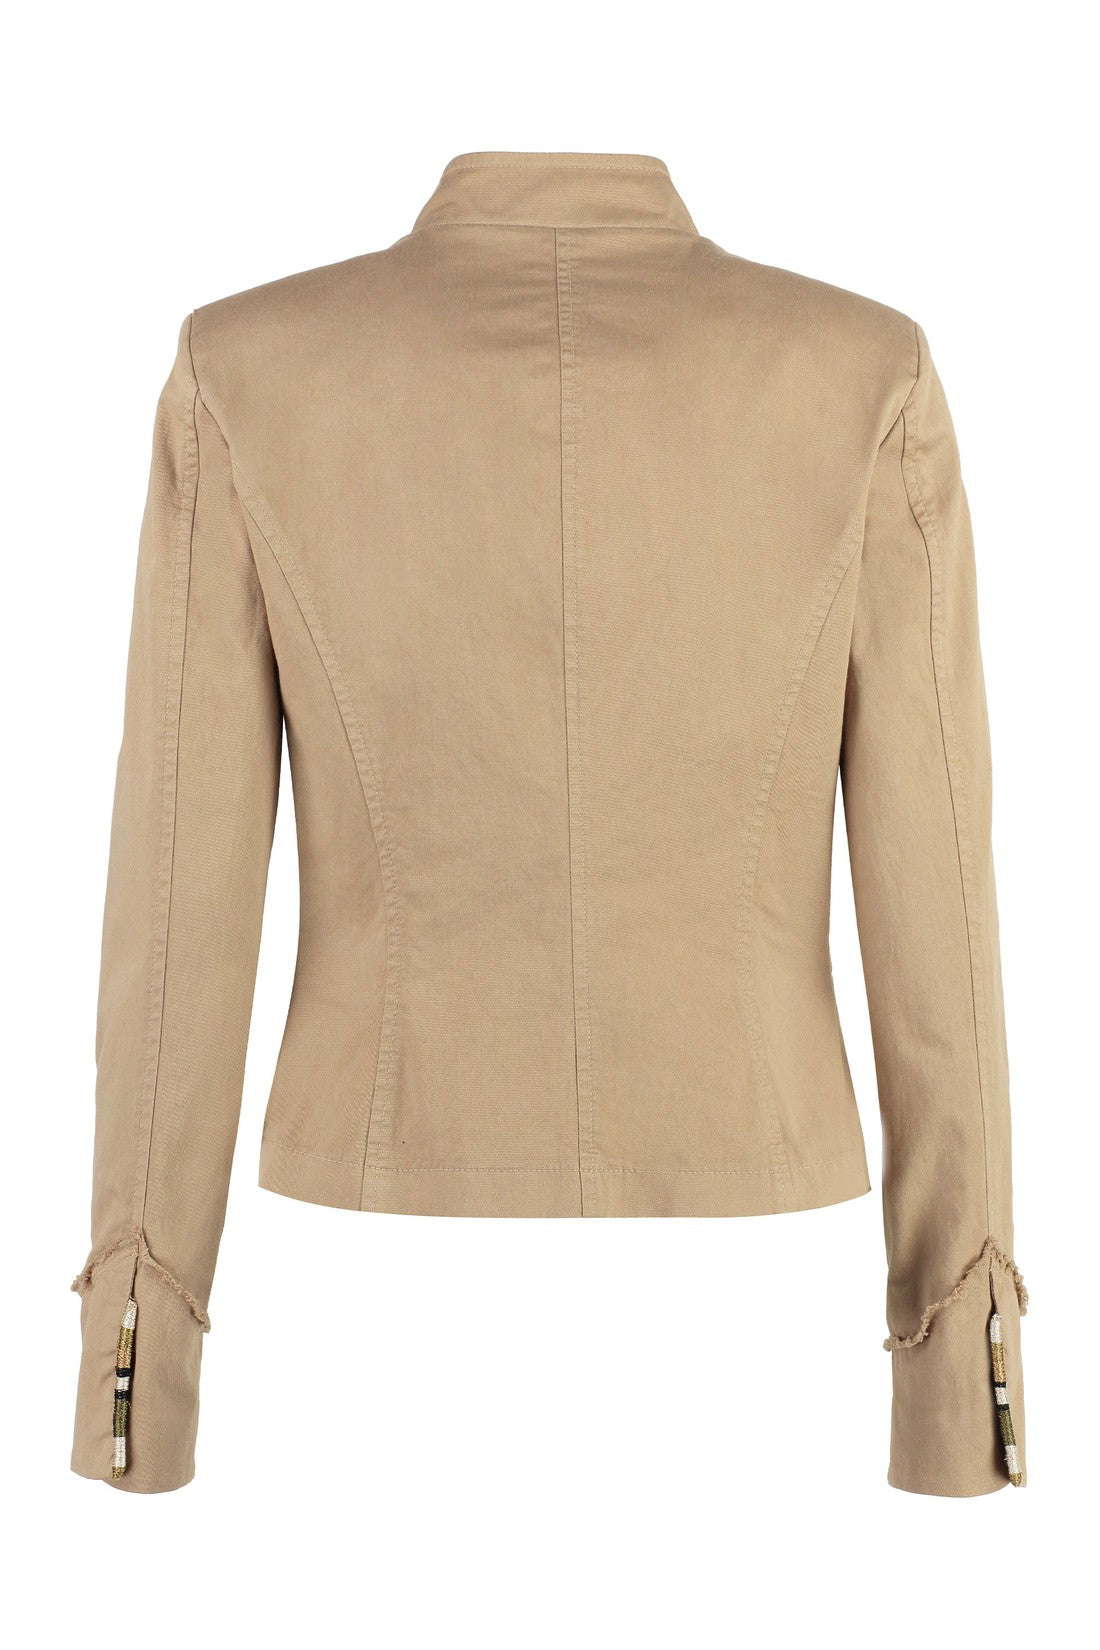 Piralo-OUTLET-SALE-Cotton jacket-ARCHIVIST